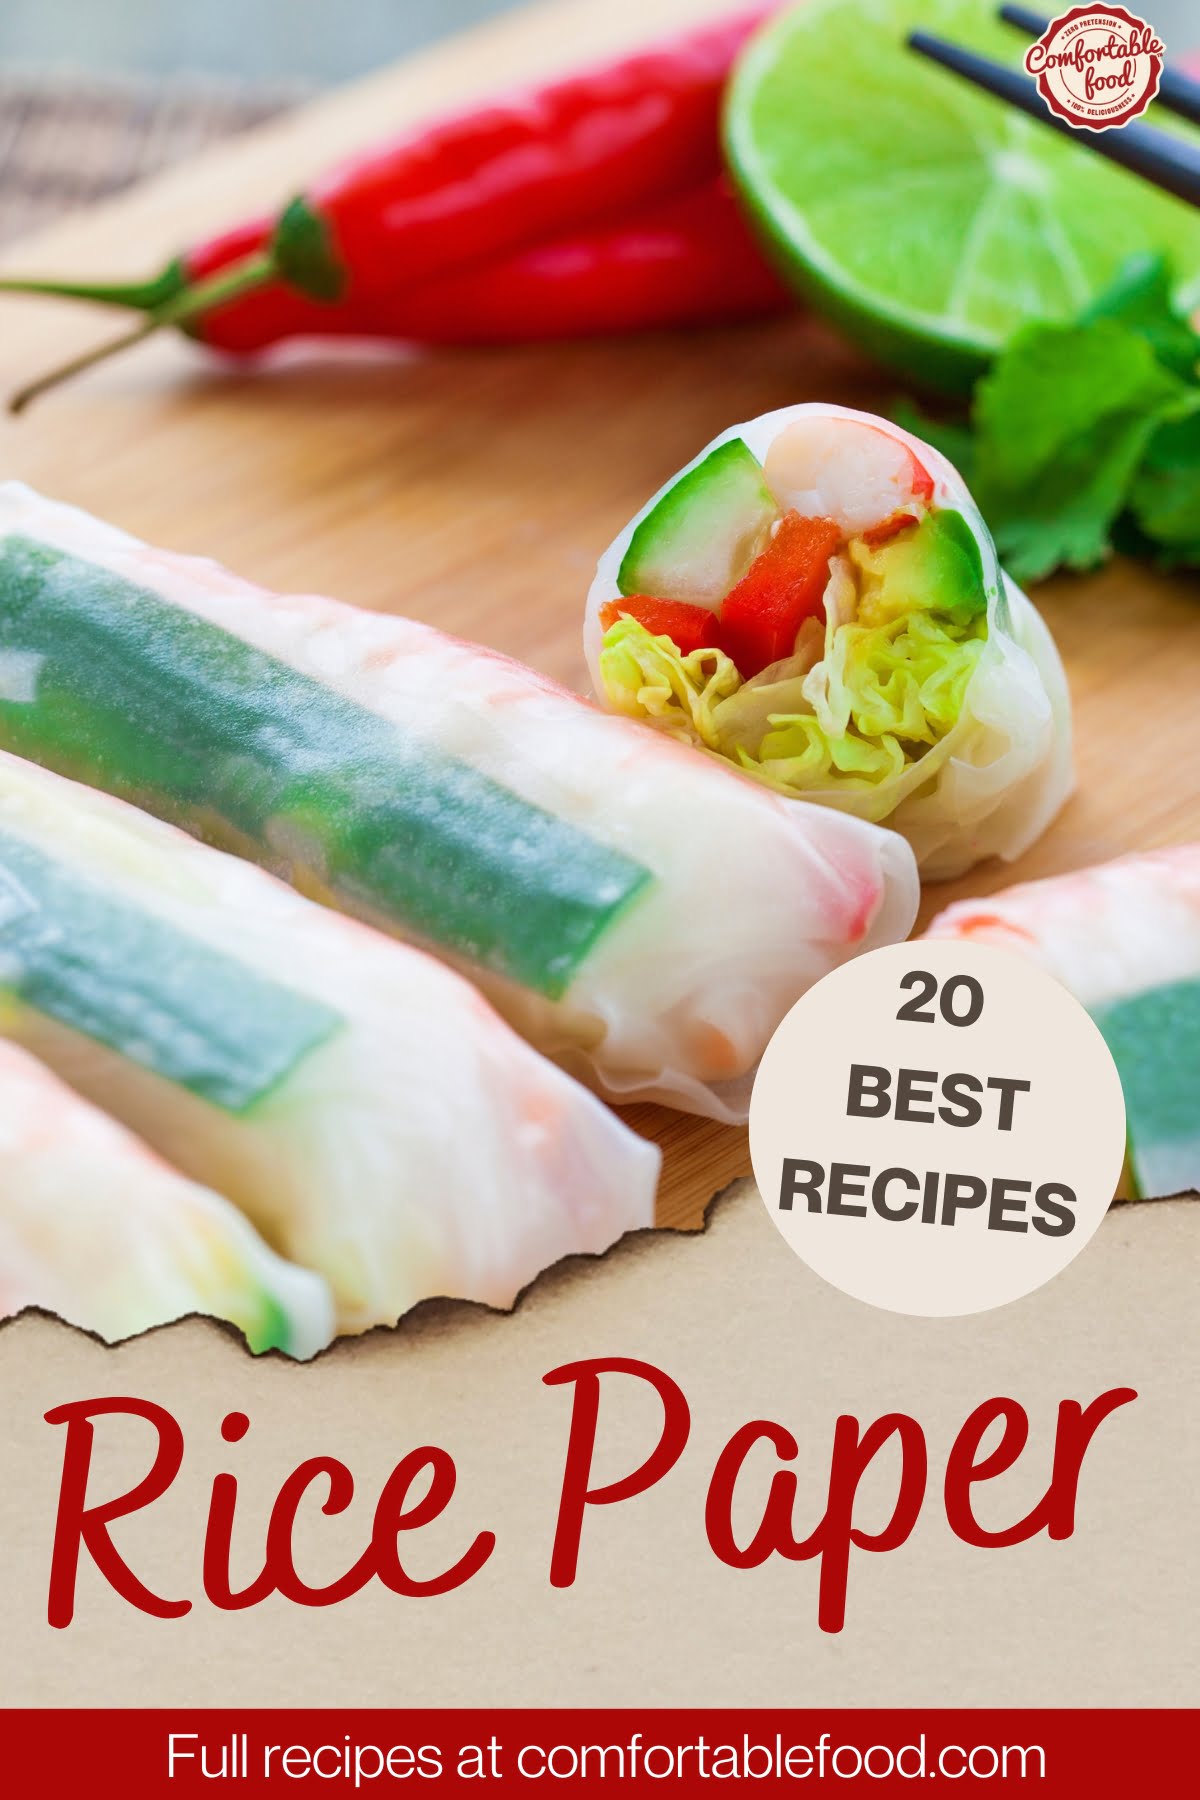 Rice paper recipes - socials